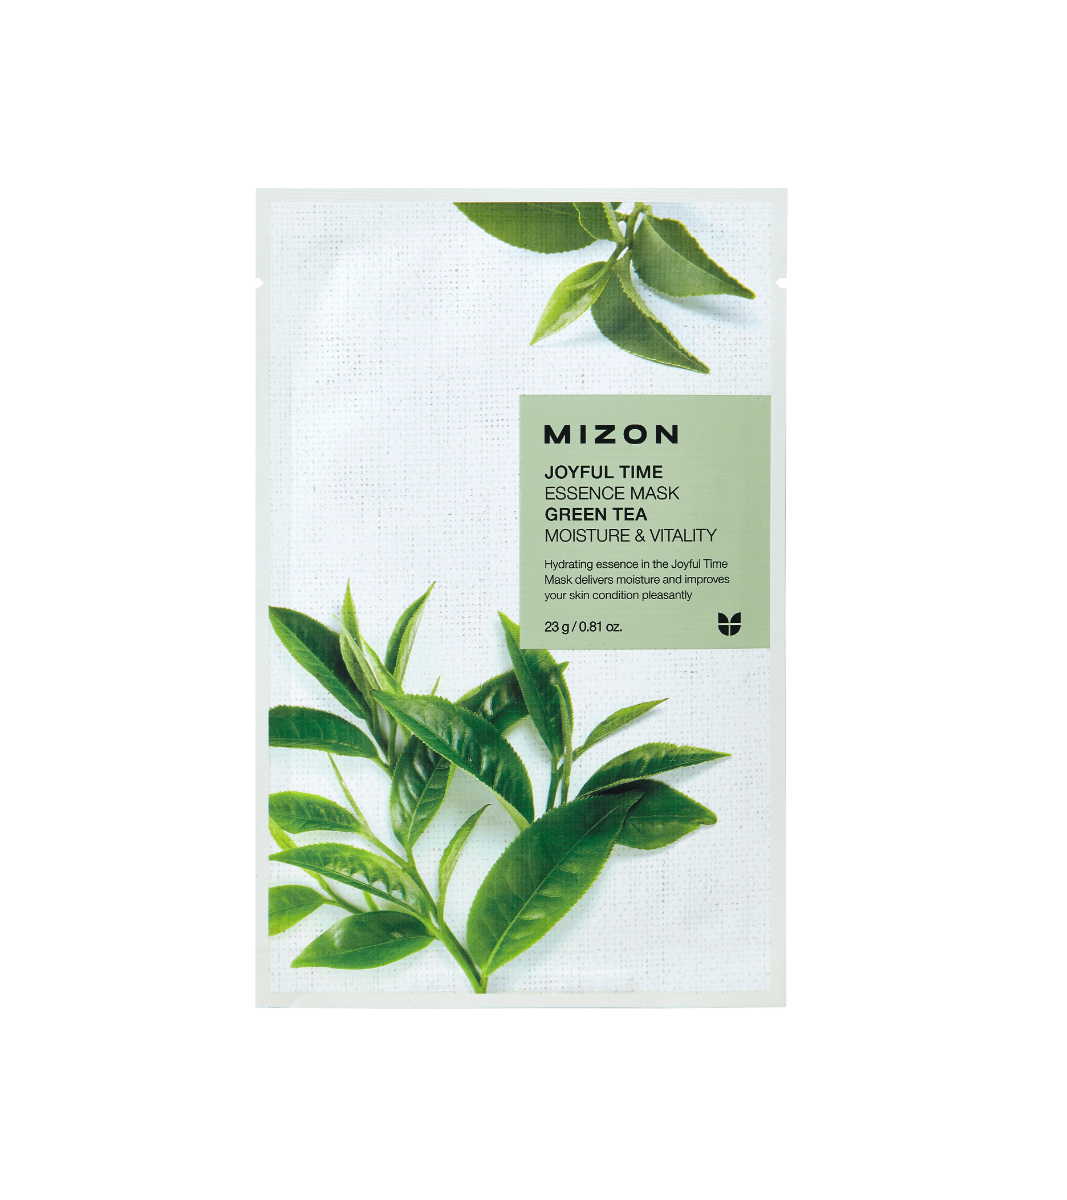 Mizon Joyful Time Essence Mask Green Tea pleťová maska 23 g Mizon